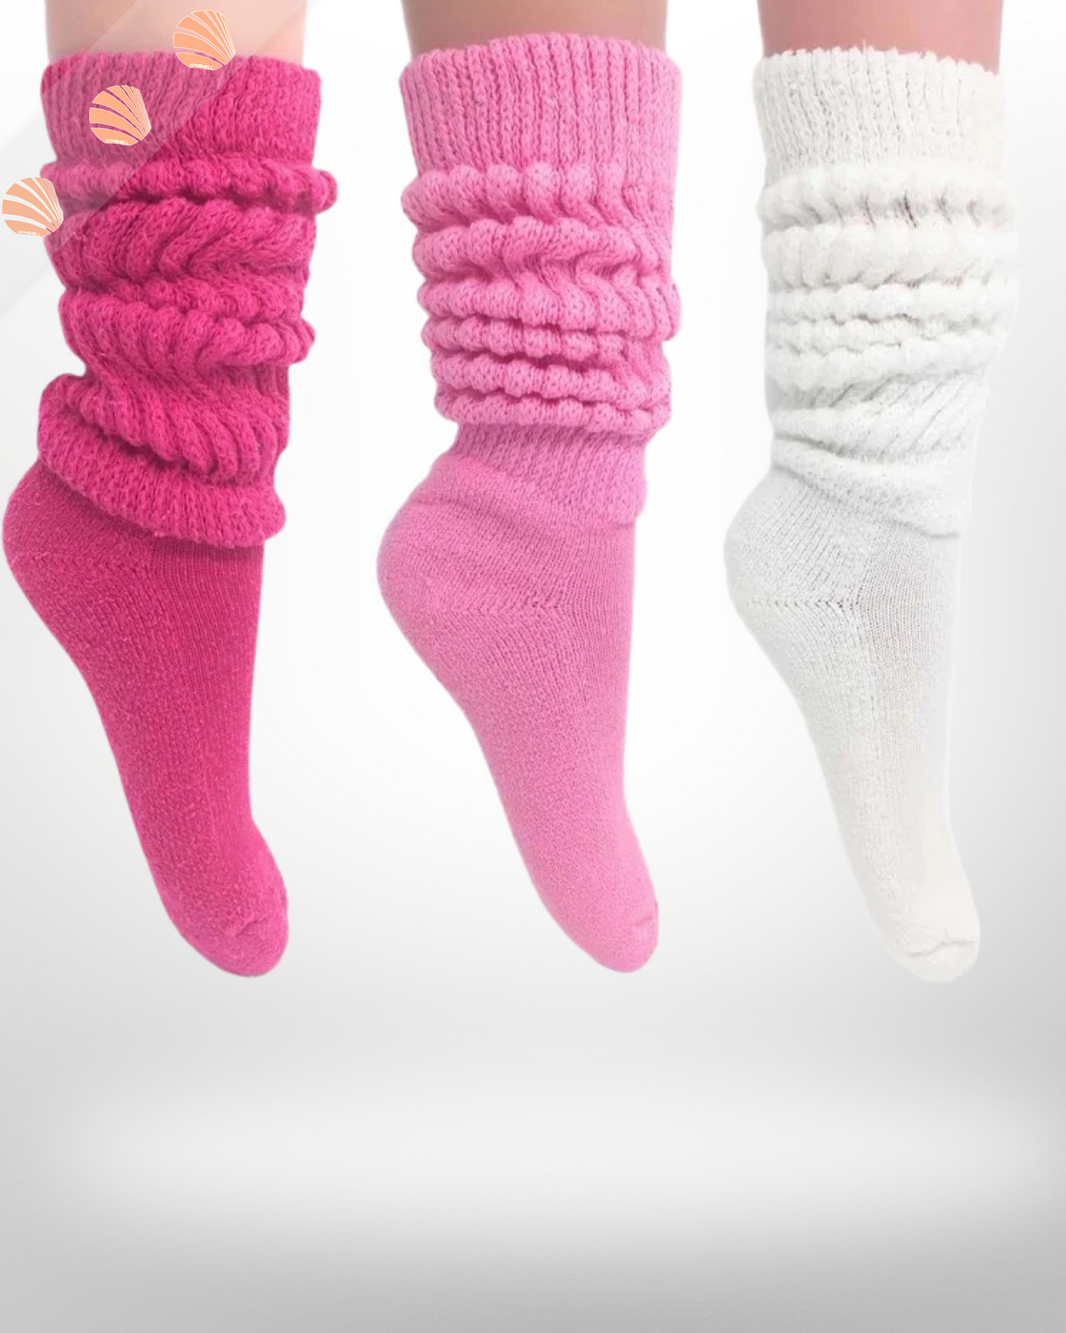 Slouch socks